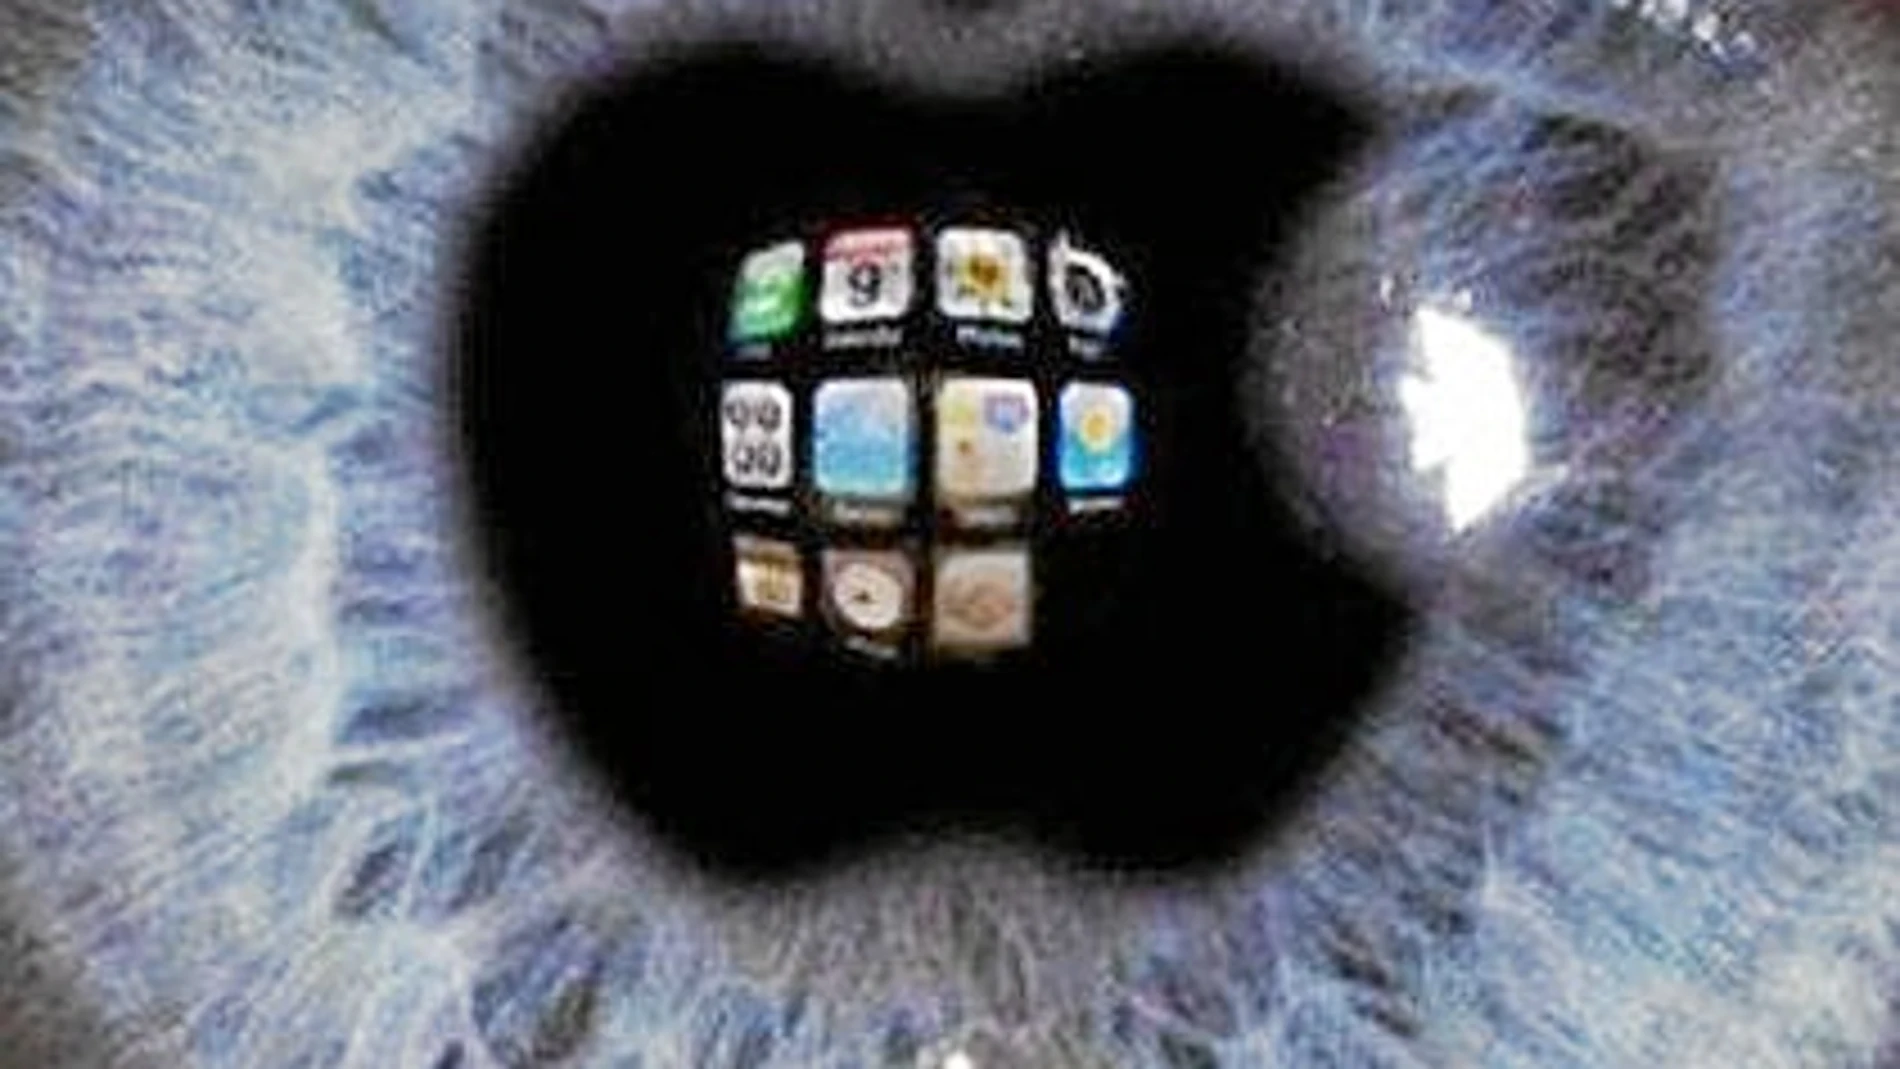 Las iLenses trasladan la pantalla del móvil y sus apps al ojo